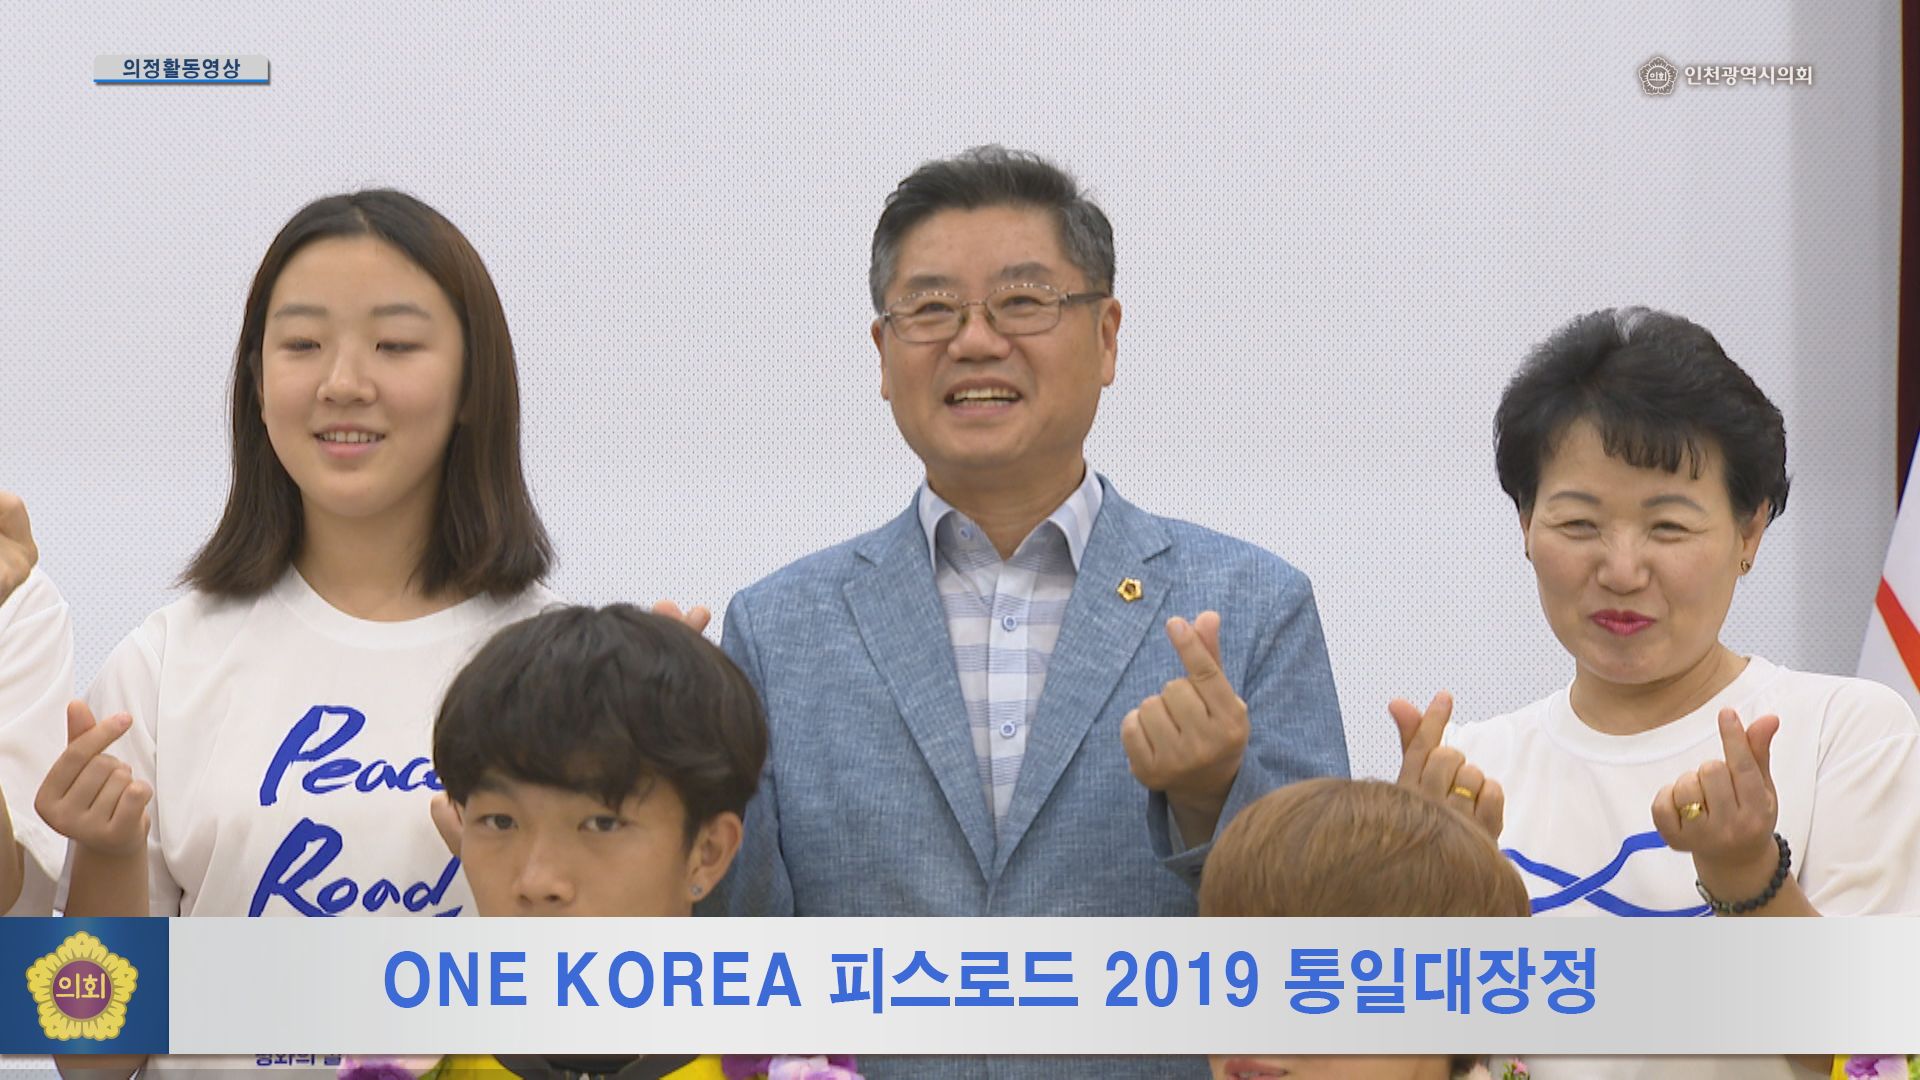 ONE KOREA 피스로드 2019 통일대장정 사진